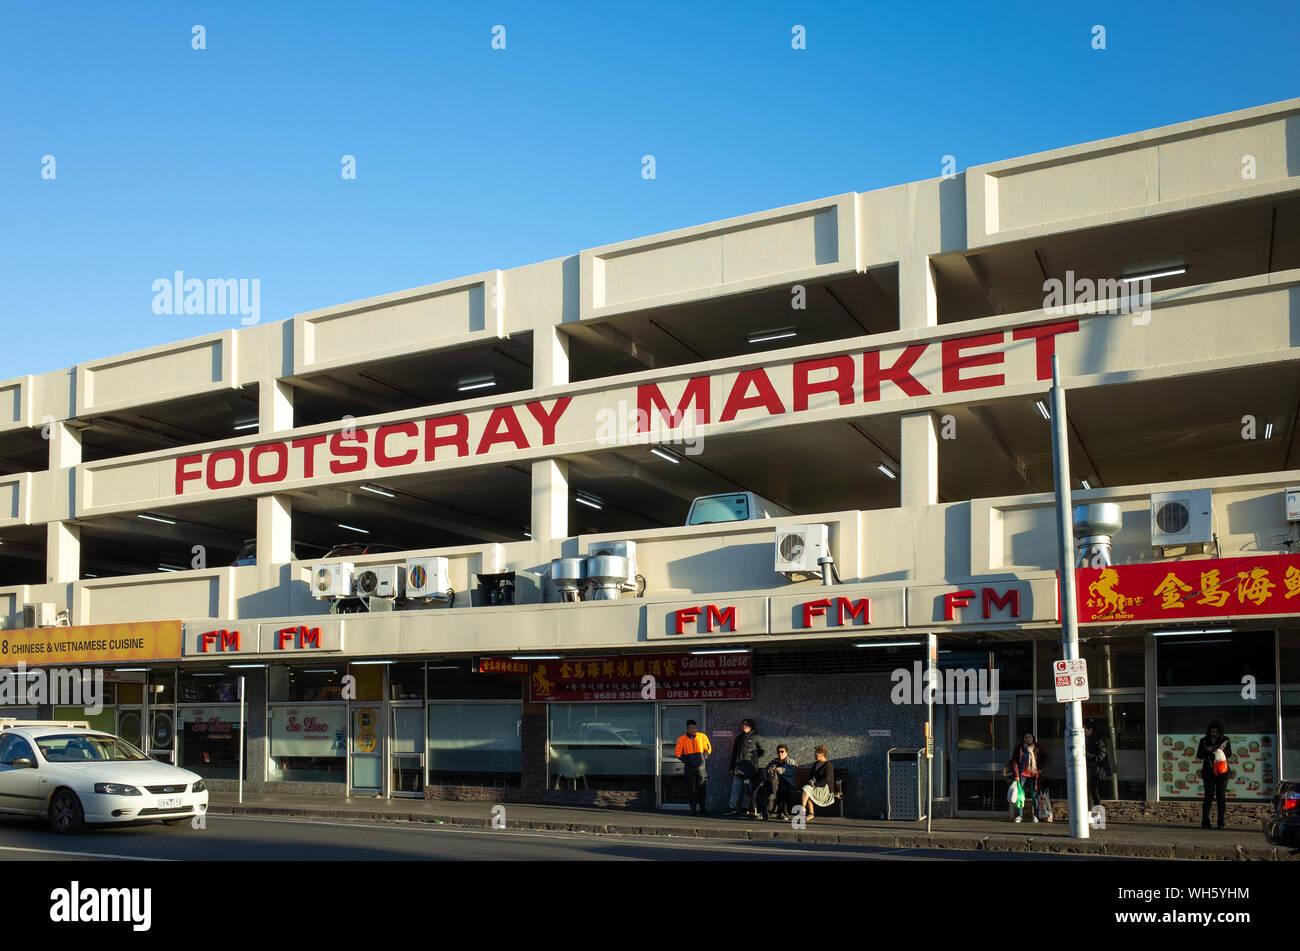 El edificio del mercado de Footscray. Es una gran piscina interior con productos frescos y de mercado de mariscos. Foto de stock